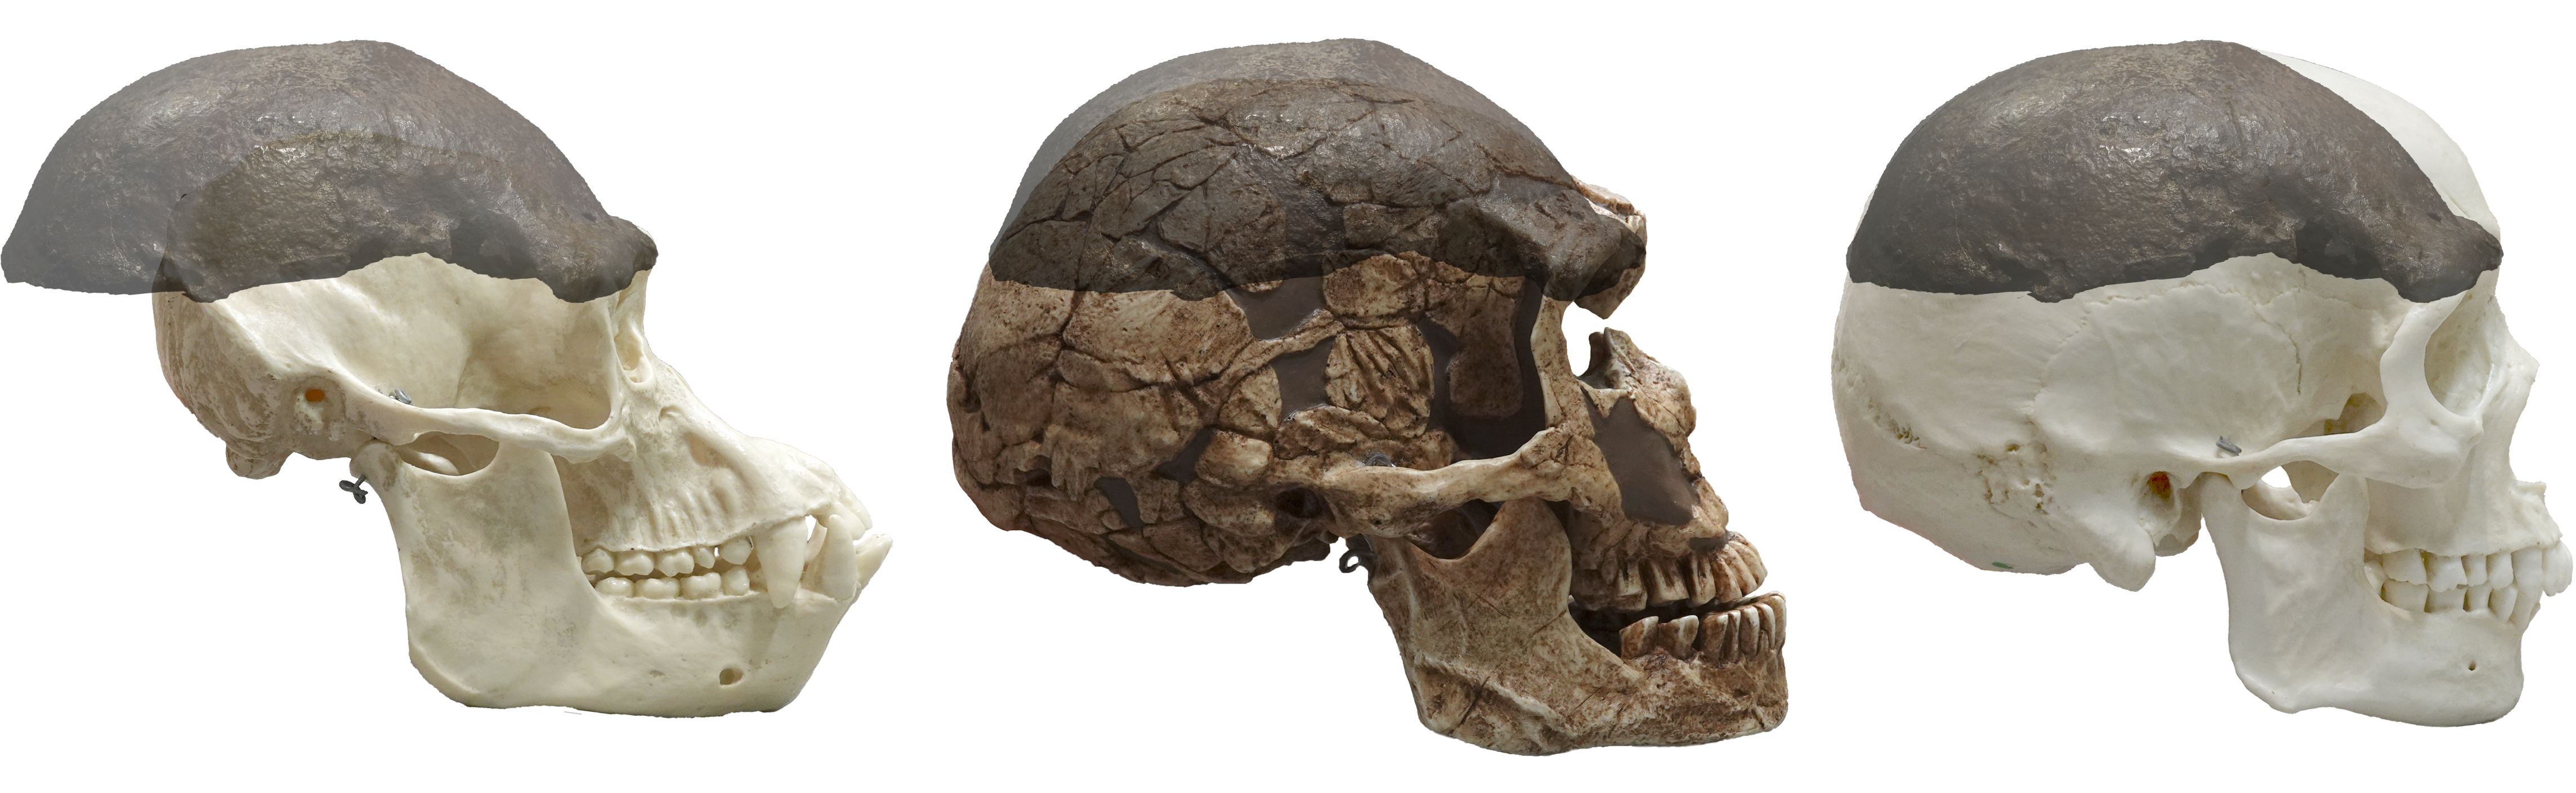 Conclusie Pathologisch Uitgestorven schedelkapje en schedels mens en chimp.png | Natuurwijzer